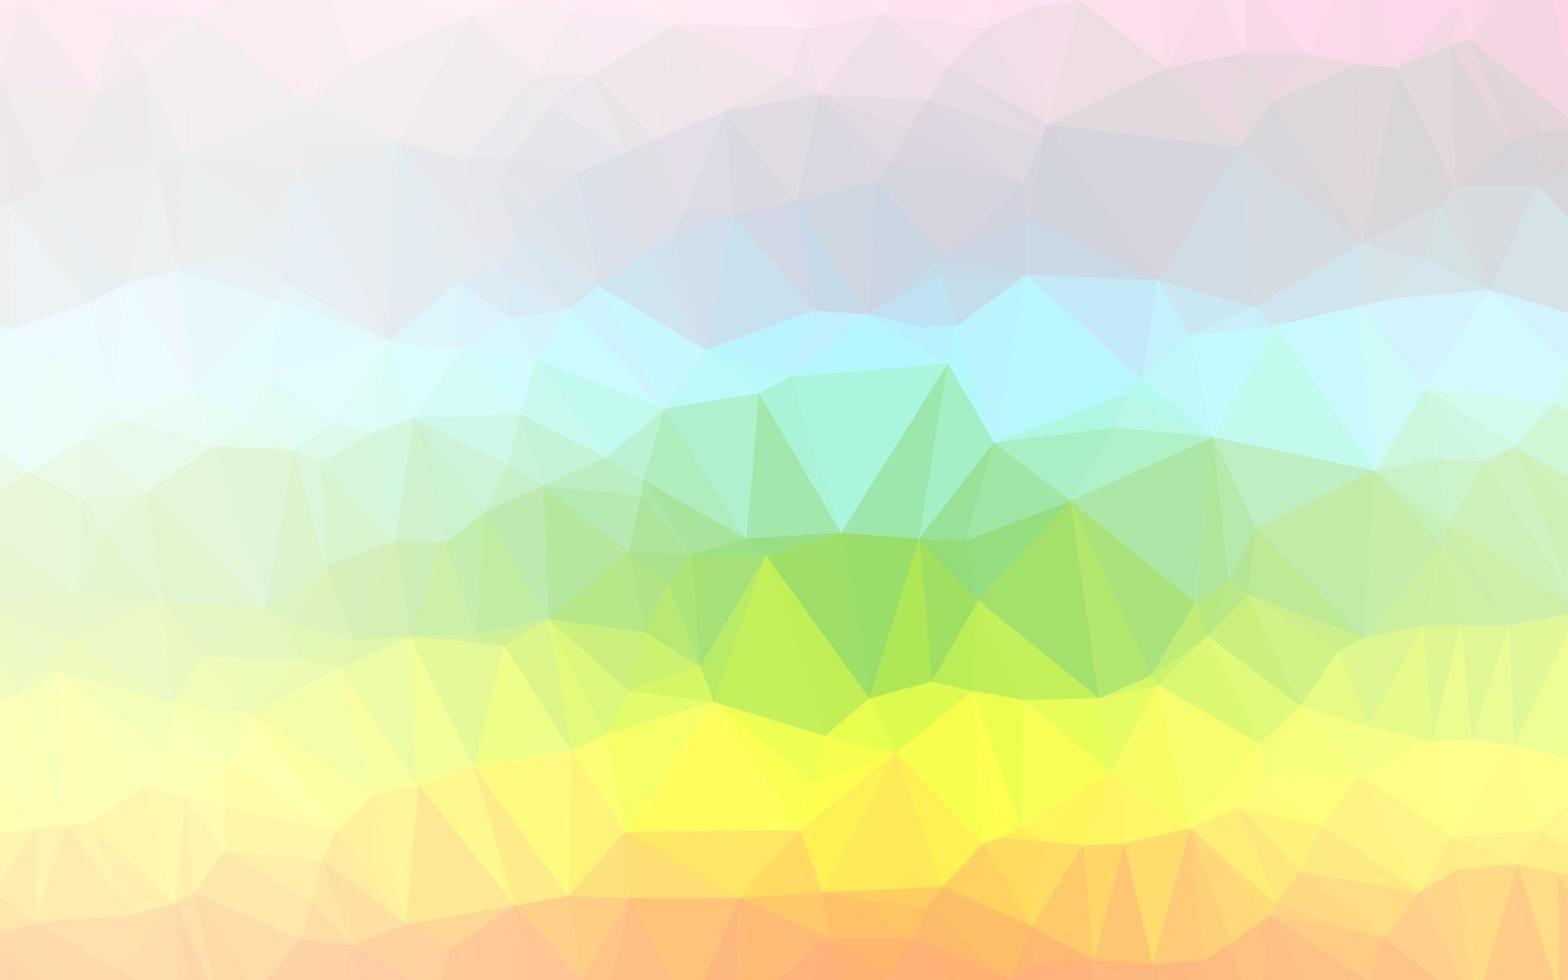 multicolore clair, motif de mosaïque abstraite de vecteur arc-en-ciel.